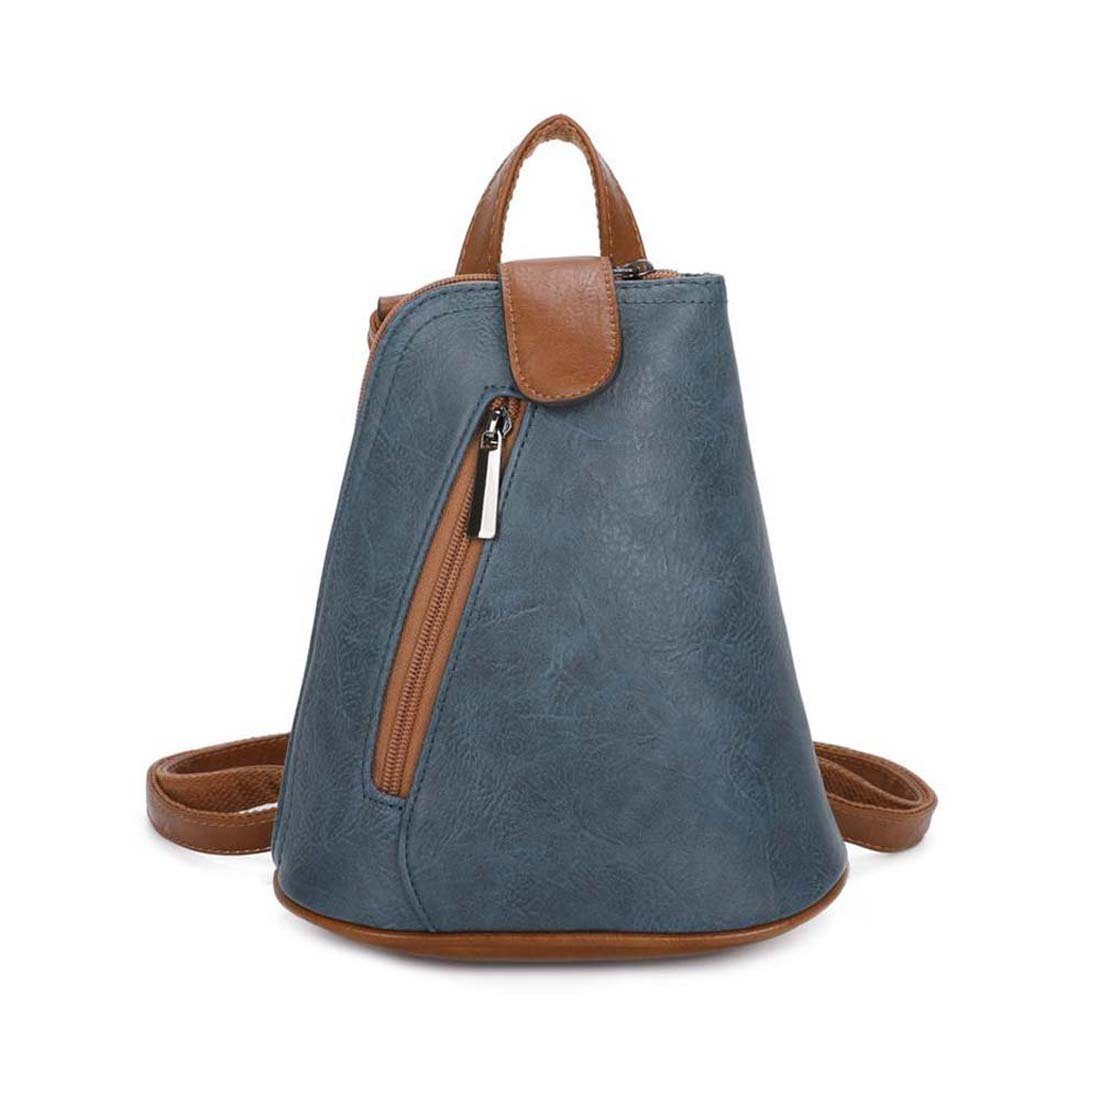 ITALYSHOP24 Rucksack Damen Tasche Schultertasche Crossover, kleiner Rucksack, Umhängetasche / Handtasche tragbar Jeansblau